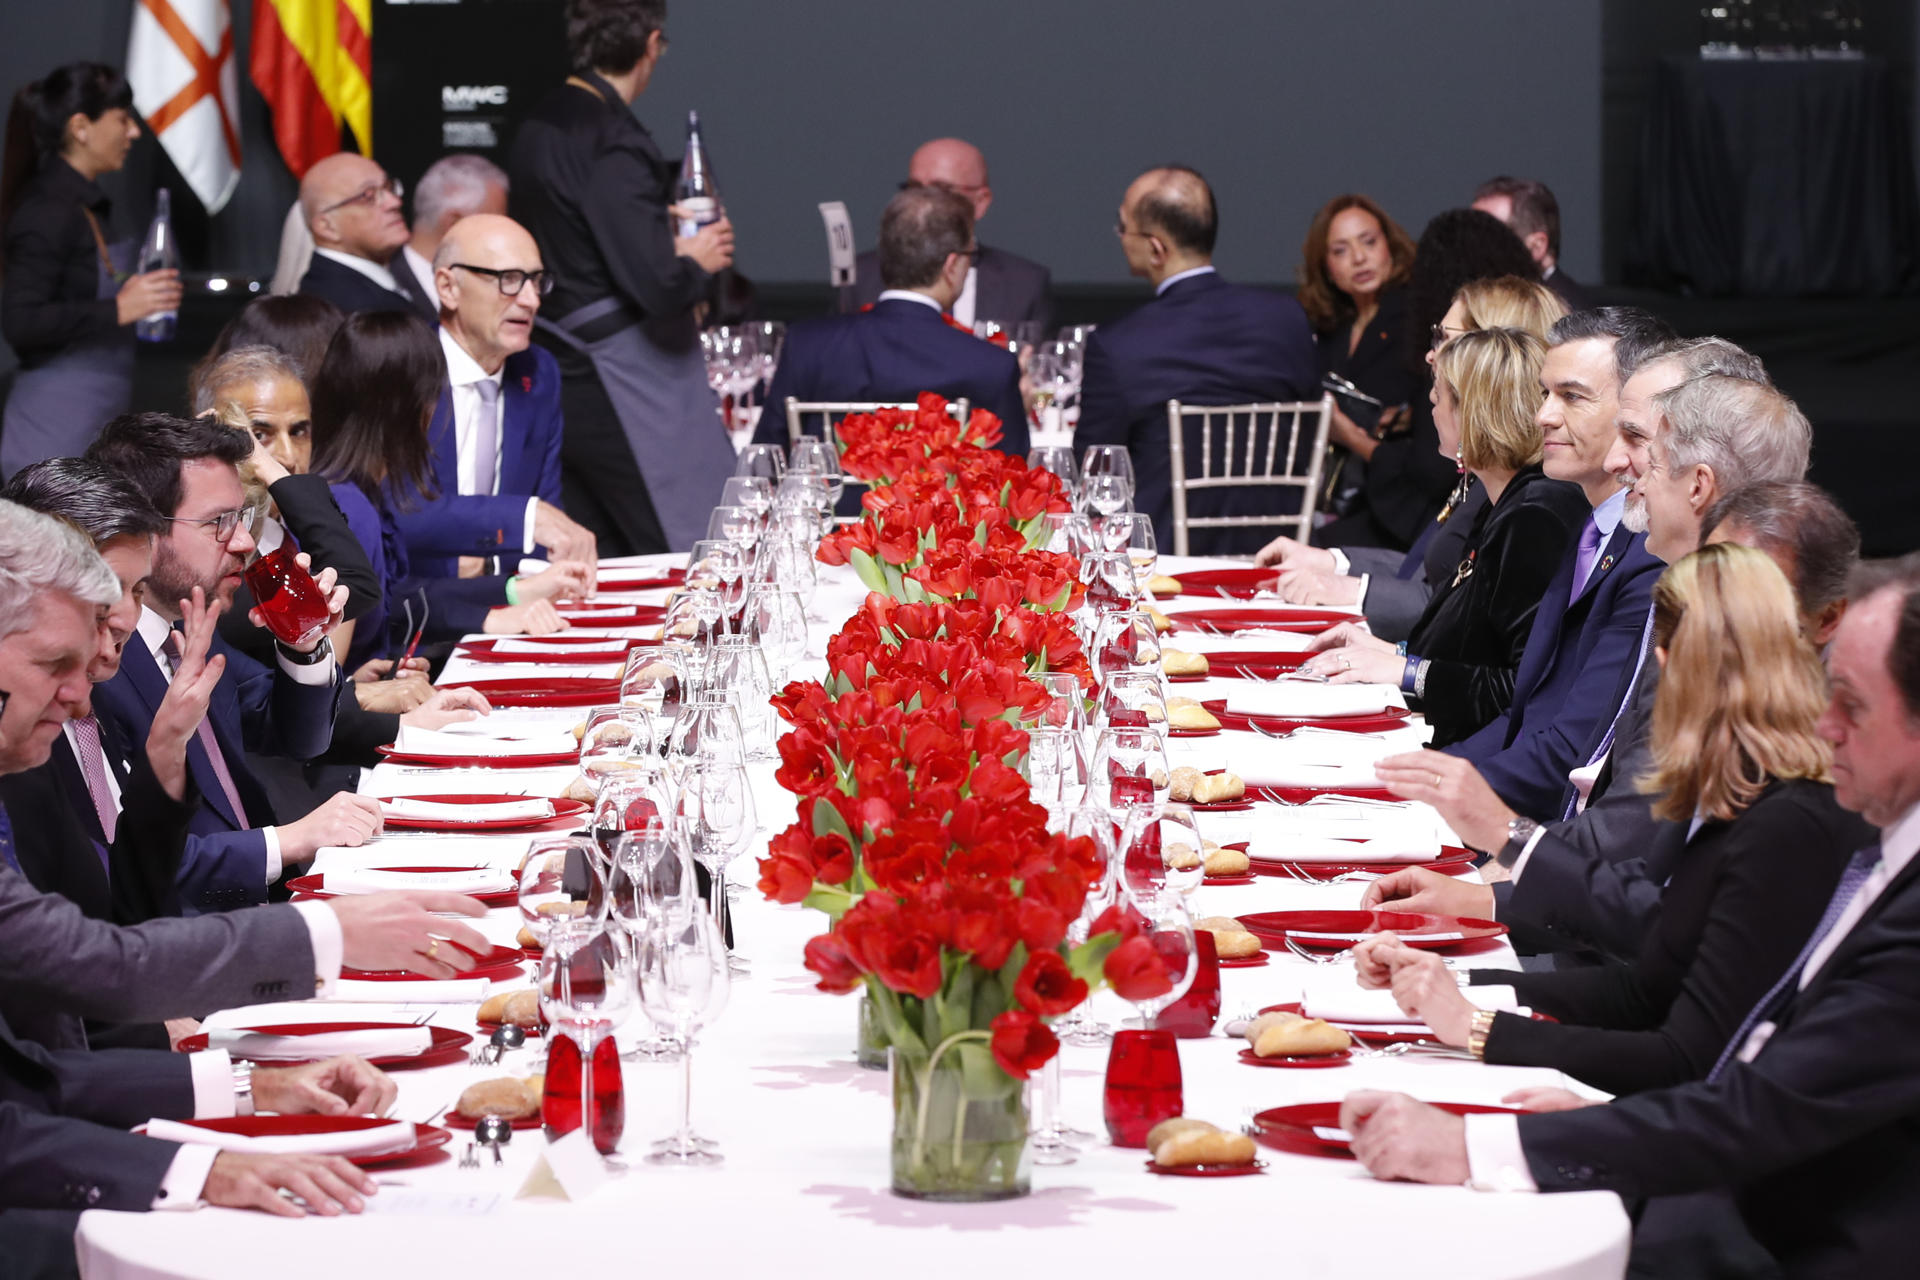 El rey Felipe VI (5d), acompañado por el presidente del Gobierno Pedro Sánchez (6d), entre otros, preside la cena oficial del Mobile World Congress de Barcelona.